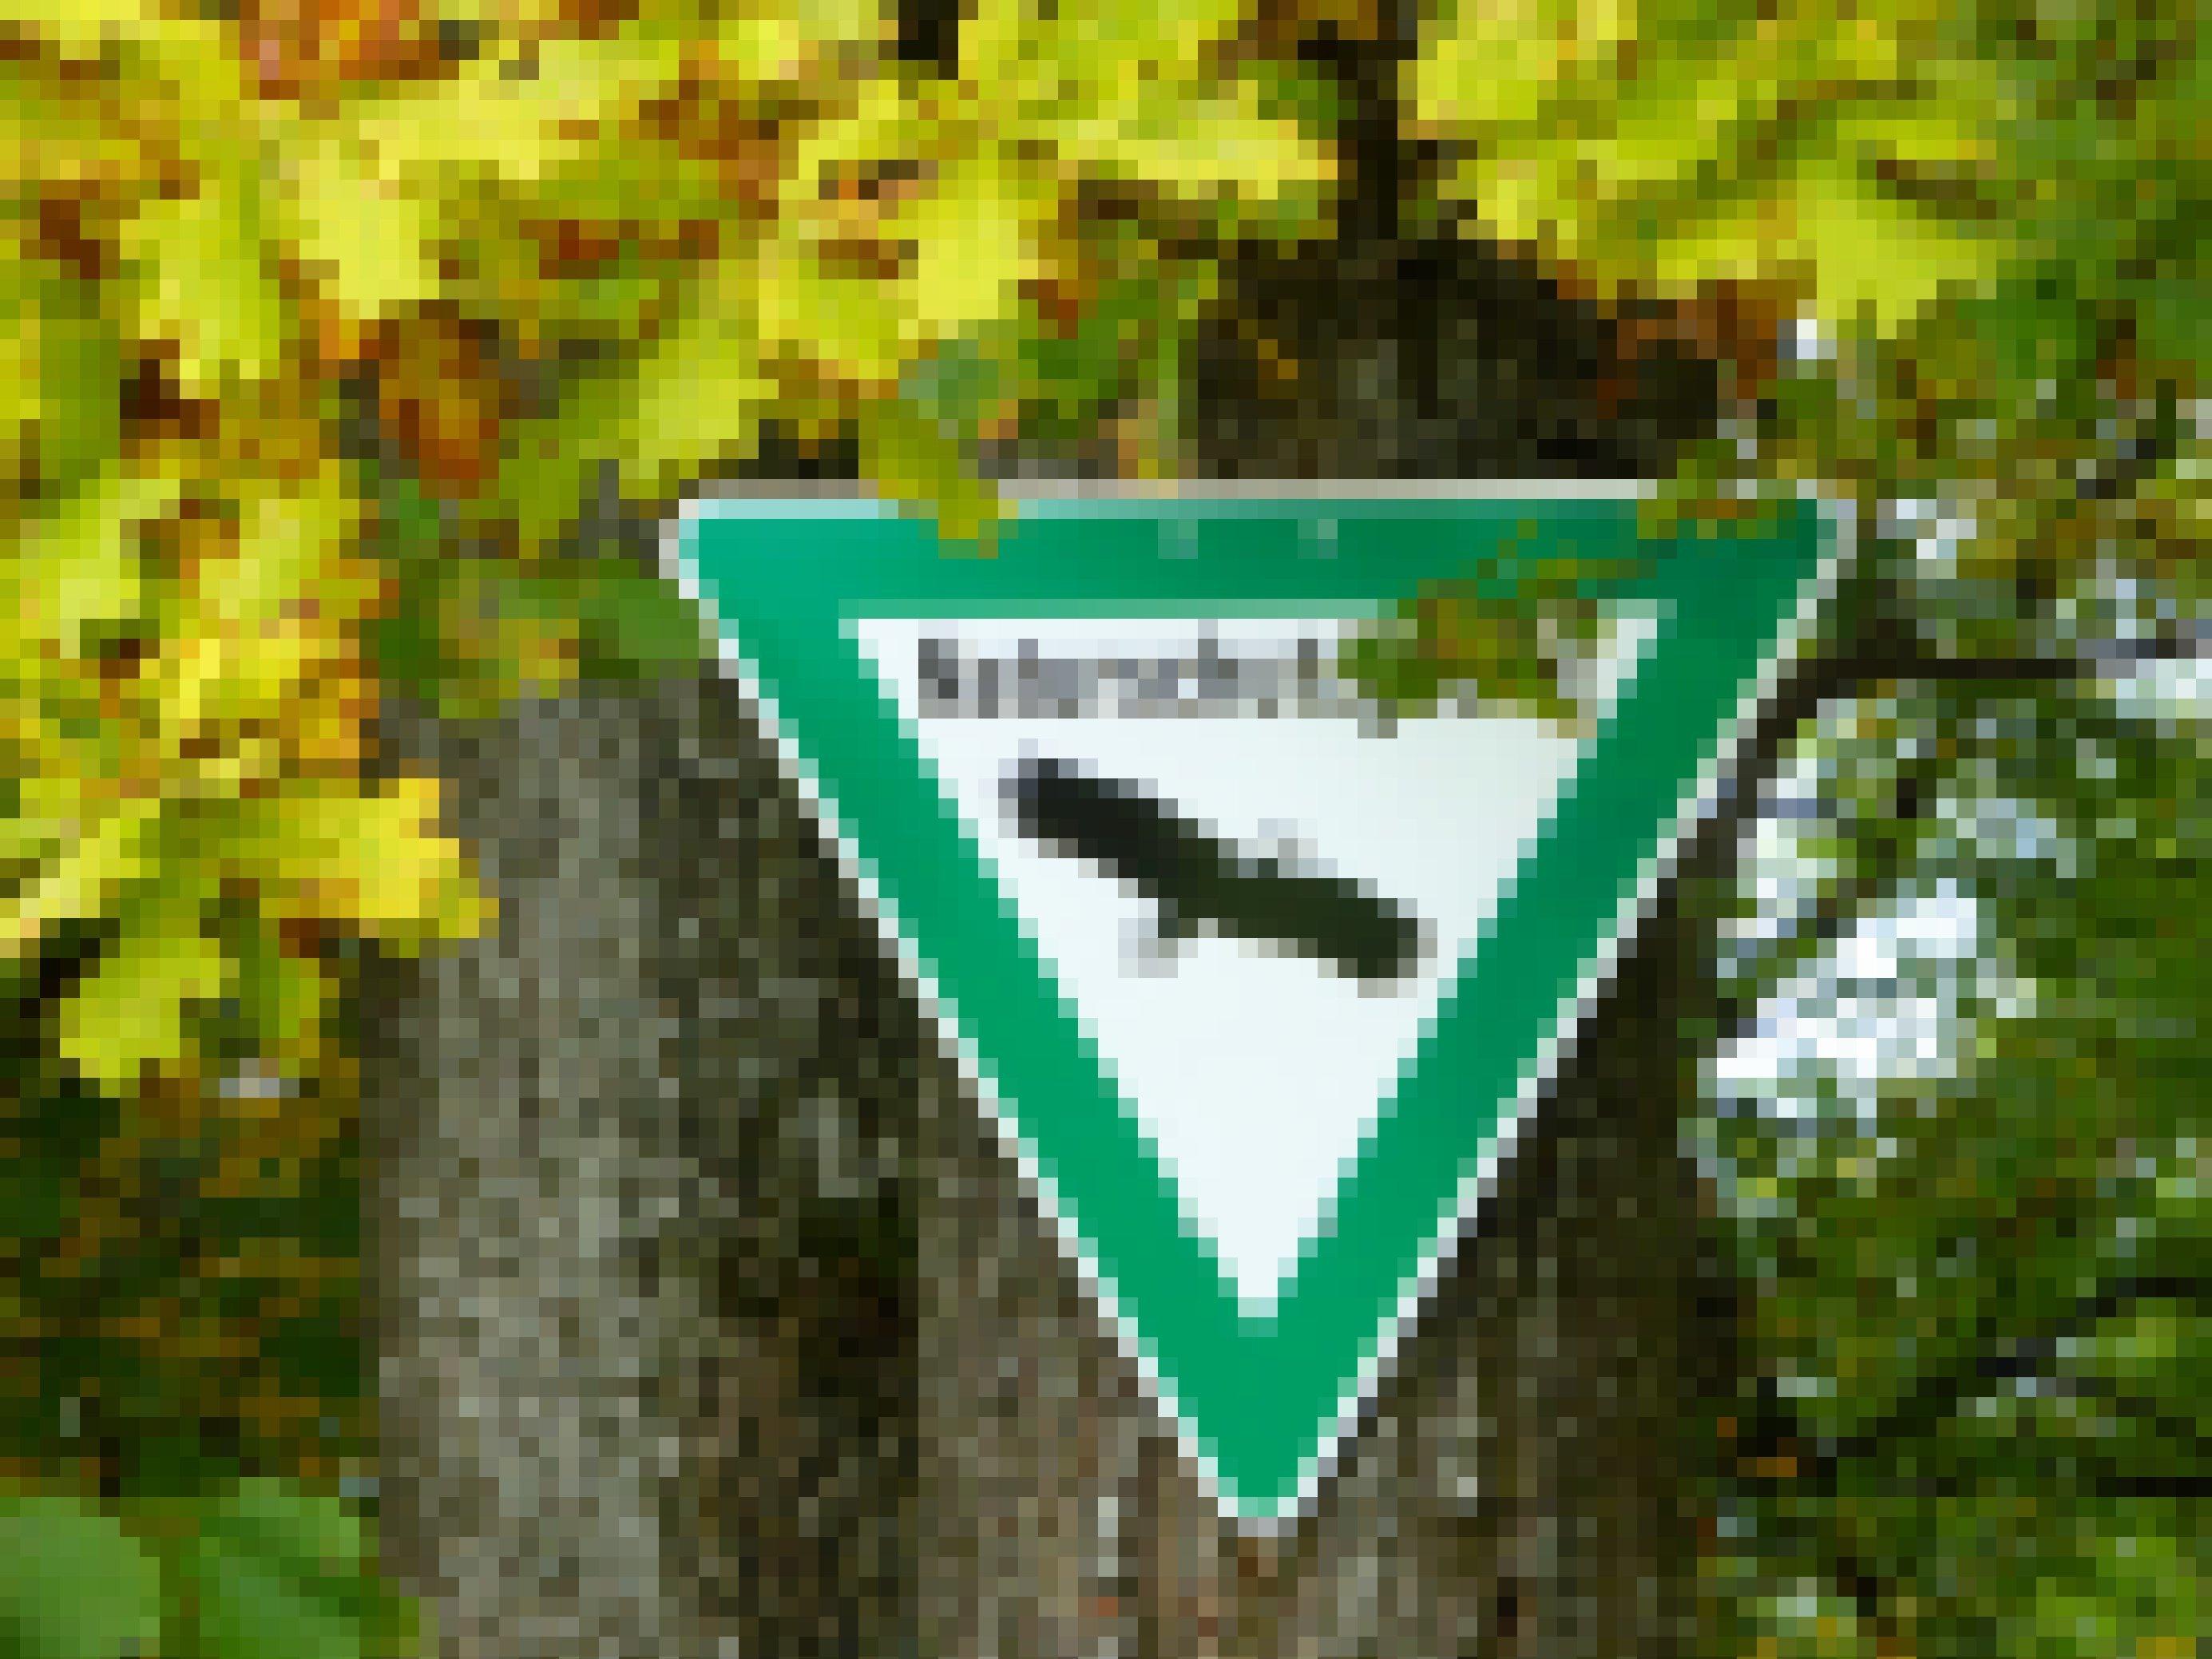 Offizielles Naturschutzgebiets-Schild, grün umrandetes auf dem Kopf stehendes Dreieck mit dem Schema eines Weißkopfseeadlers, umrahmt von sich herbstlich verfärbenden Eichenblättern.